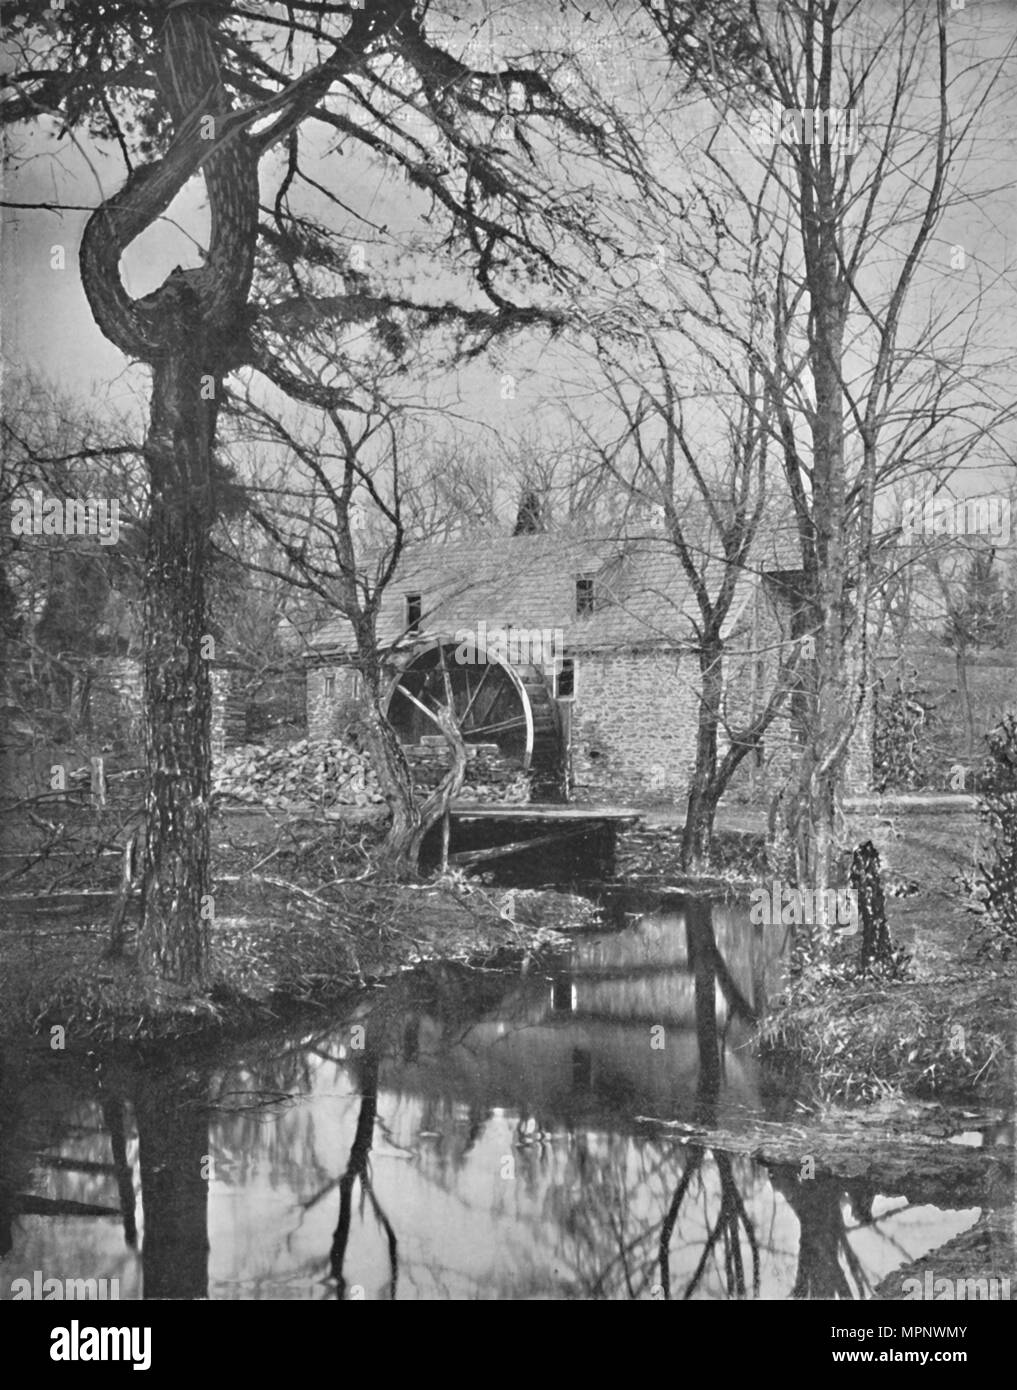 'Robert's Mill in Pennsylvania', 19th century. Artist: Unknown. Stock Photo